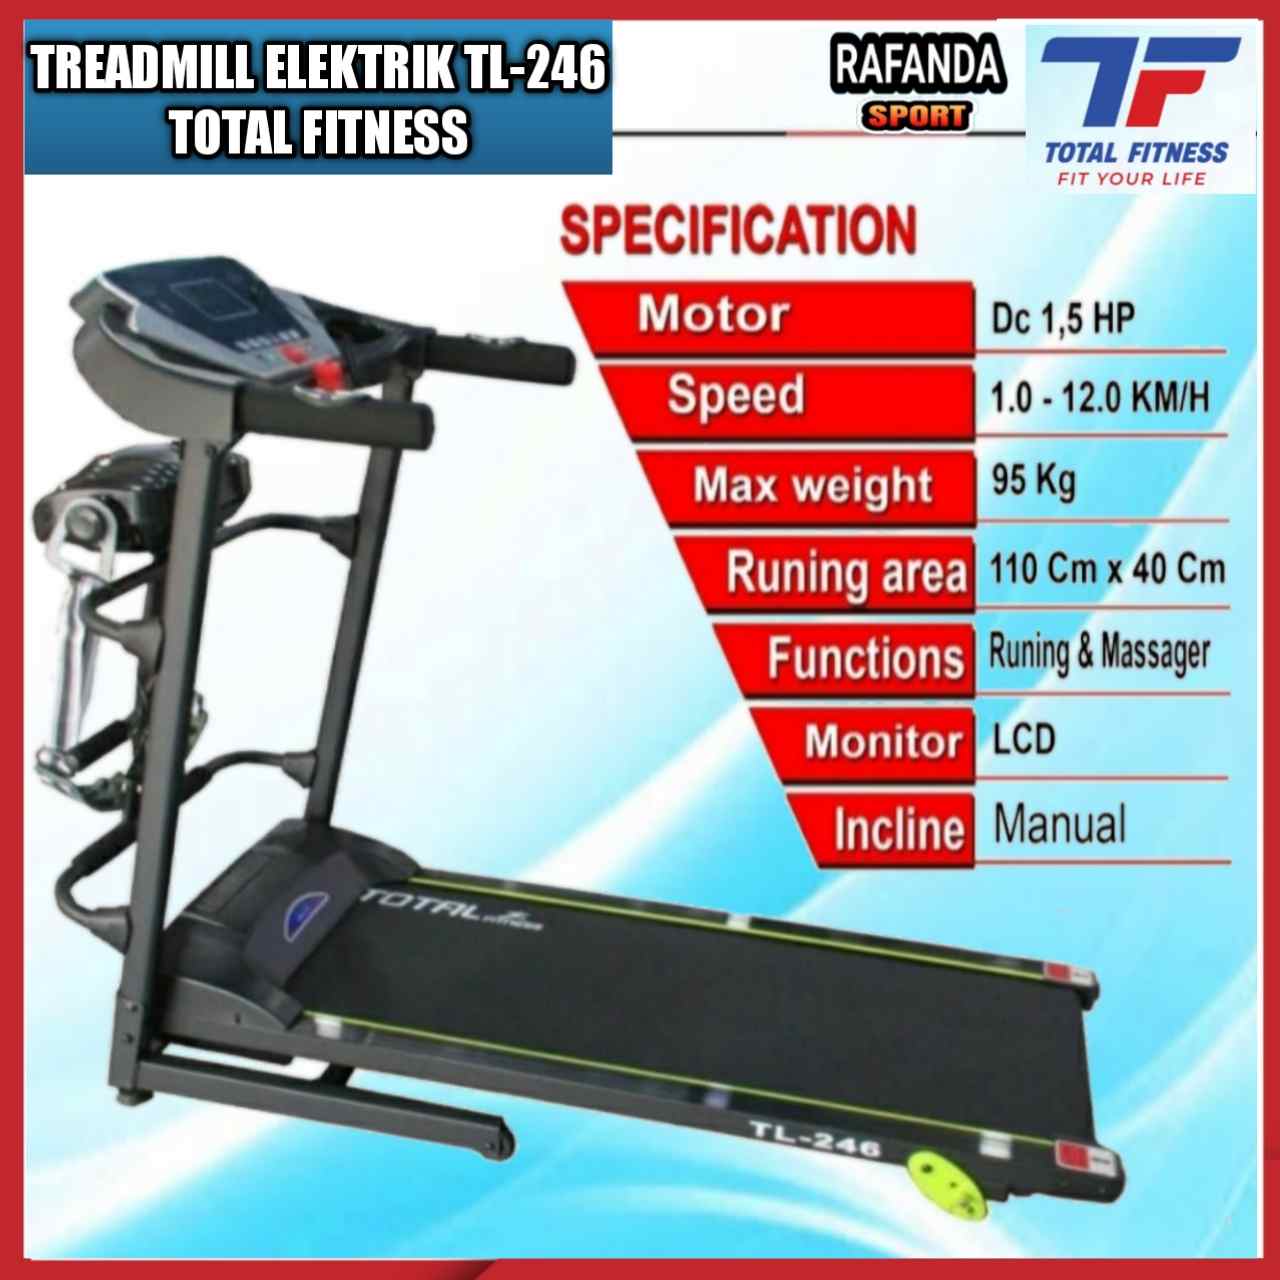 Treadmillelektrik_tl246totalfitness_jualtreadmill